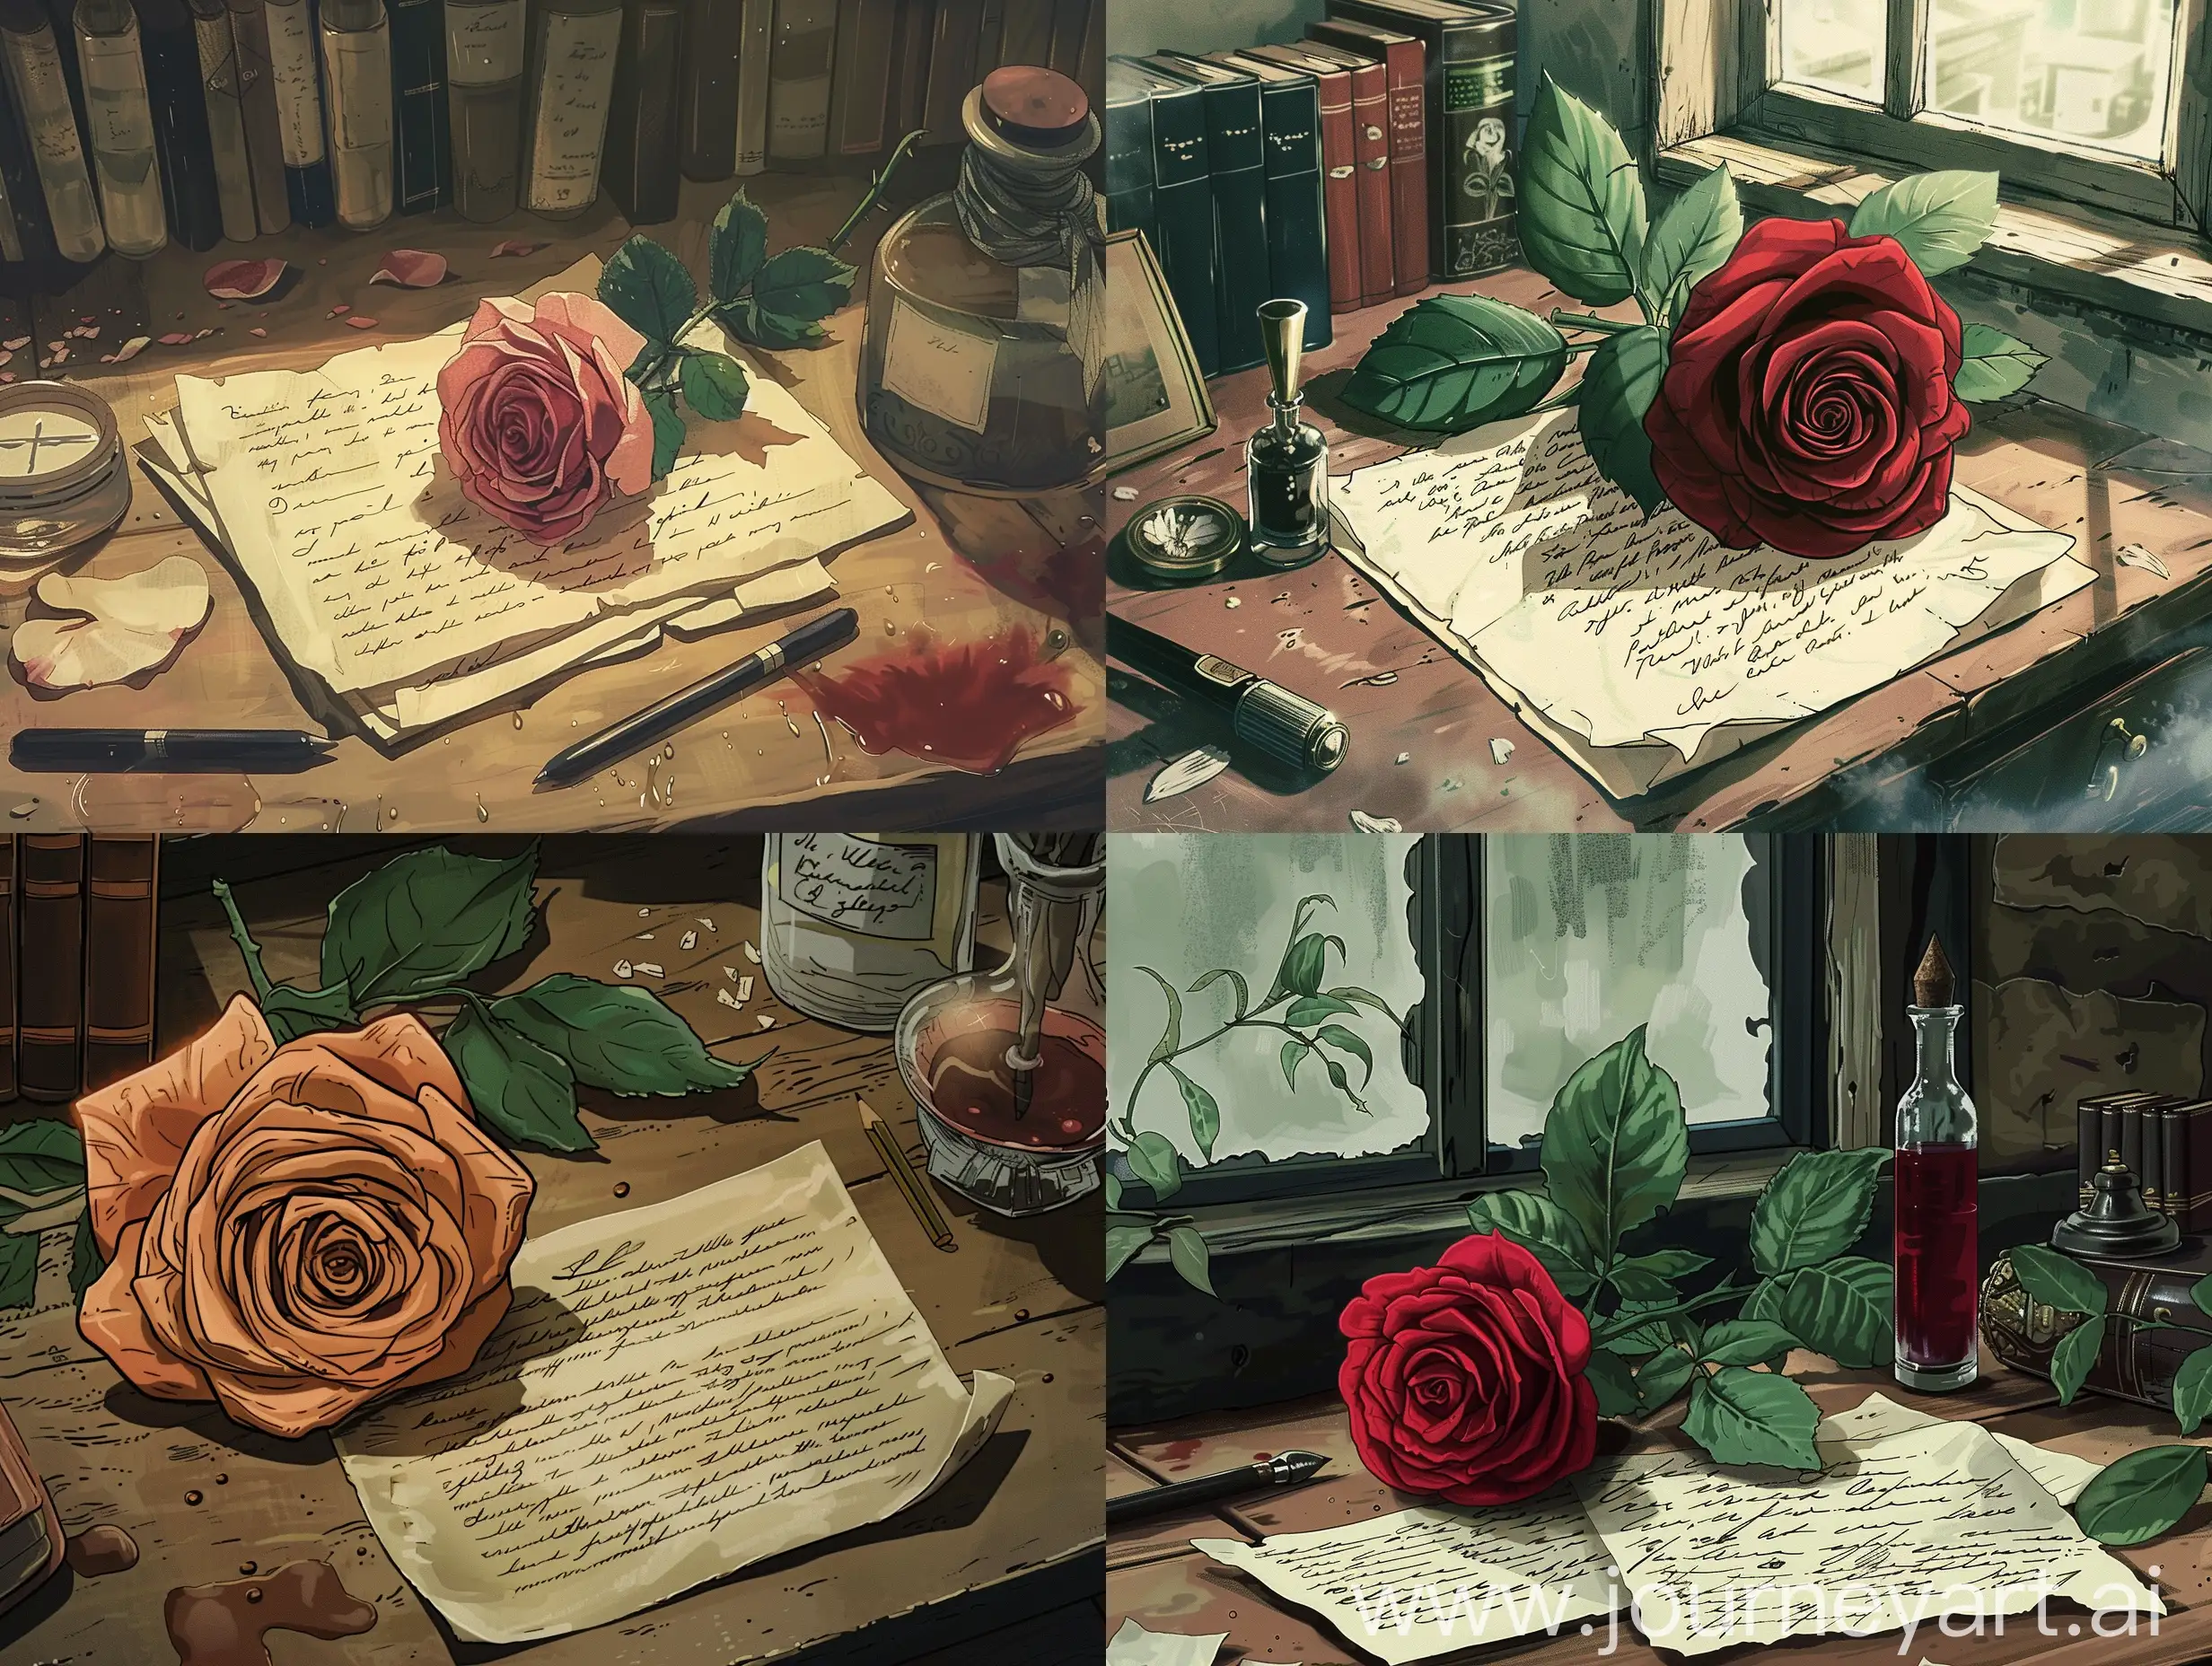 Desk, rose, letter, old ink, anime style.